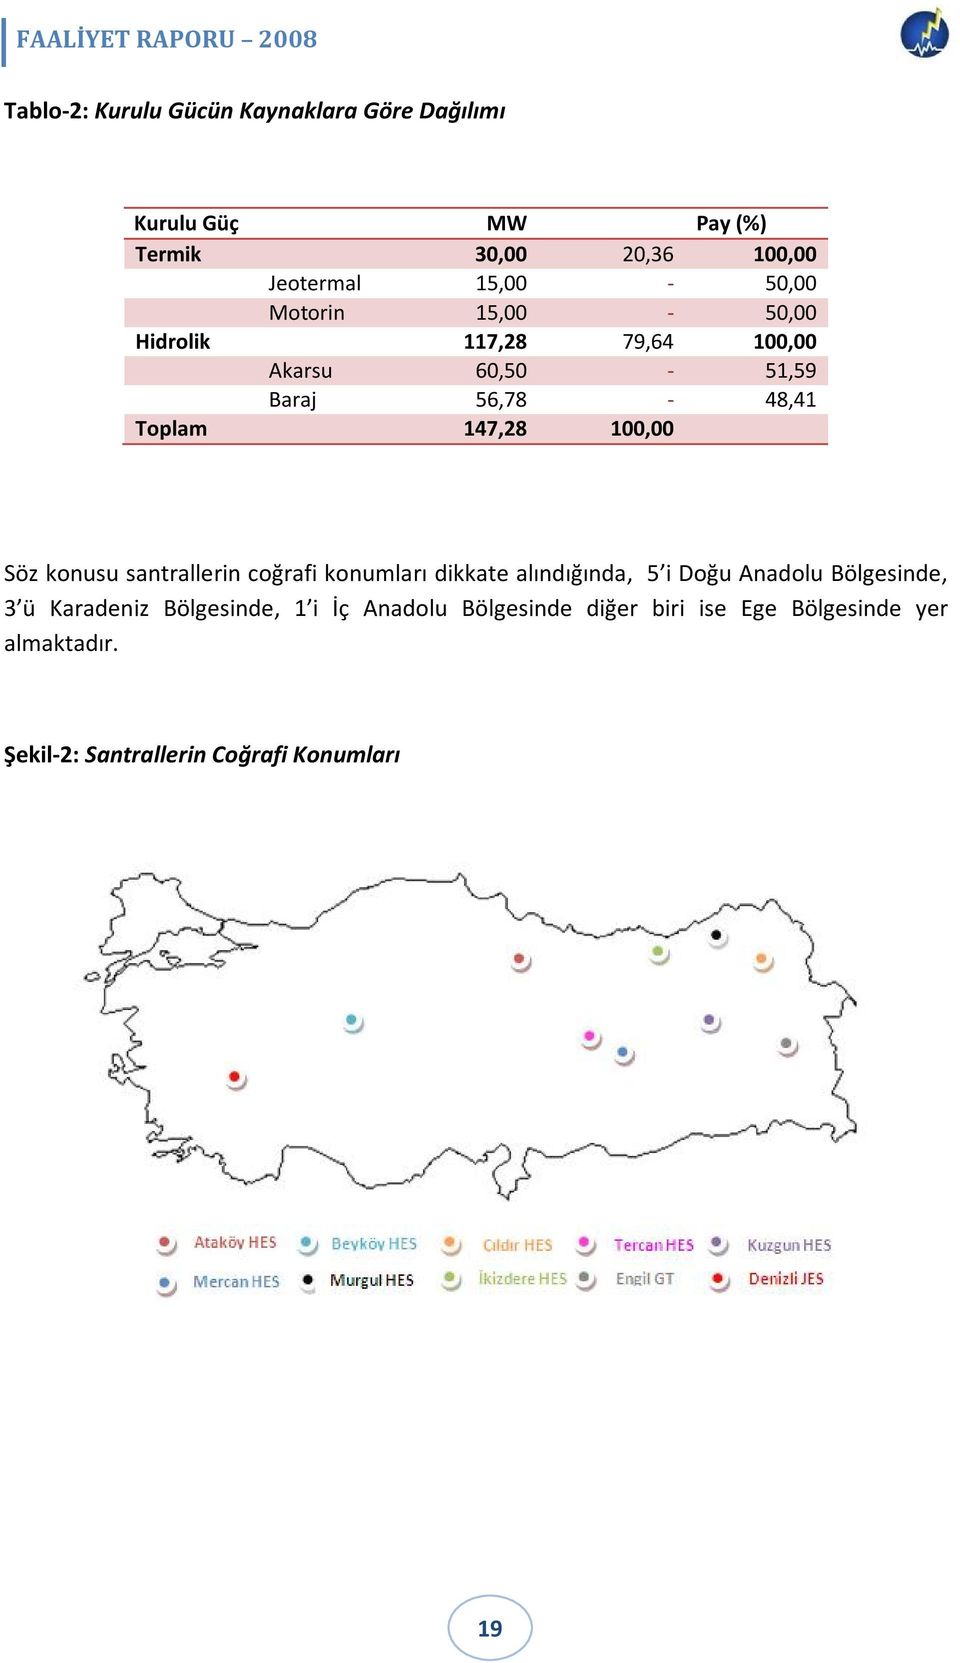 100,00 Söz konusu santrallerin coğrafi konumları dikkate alındığında, 5 i Doğu Anadolu Bölgesinde, 3 ü Karadeniz